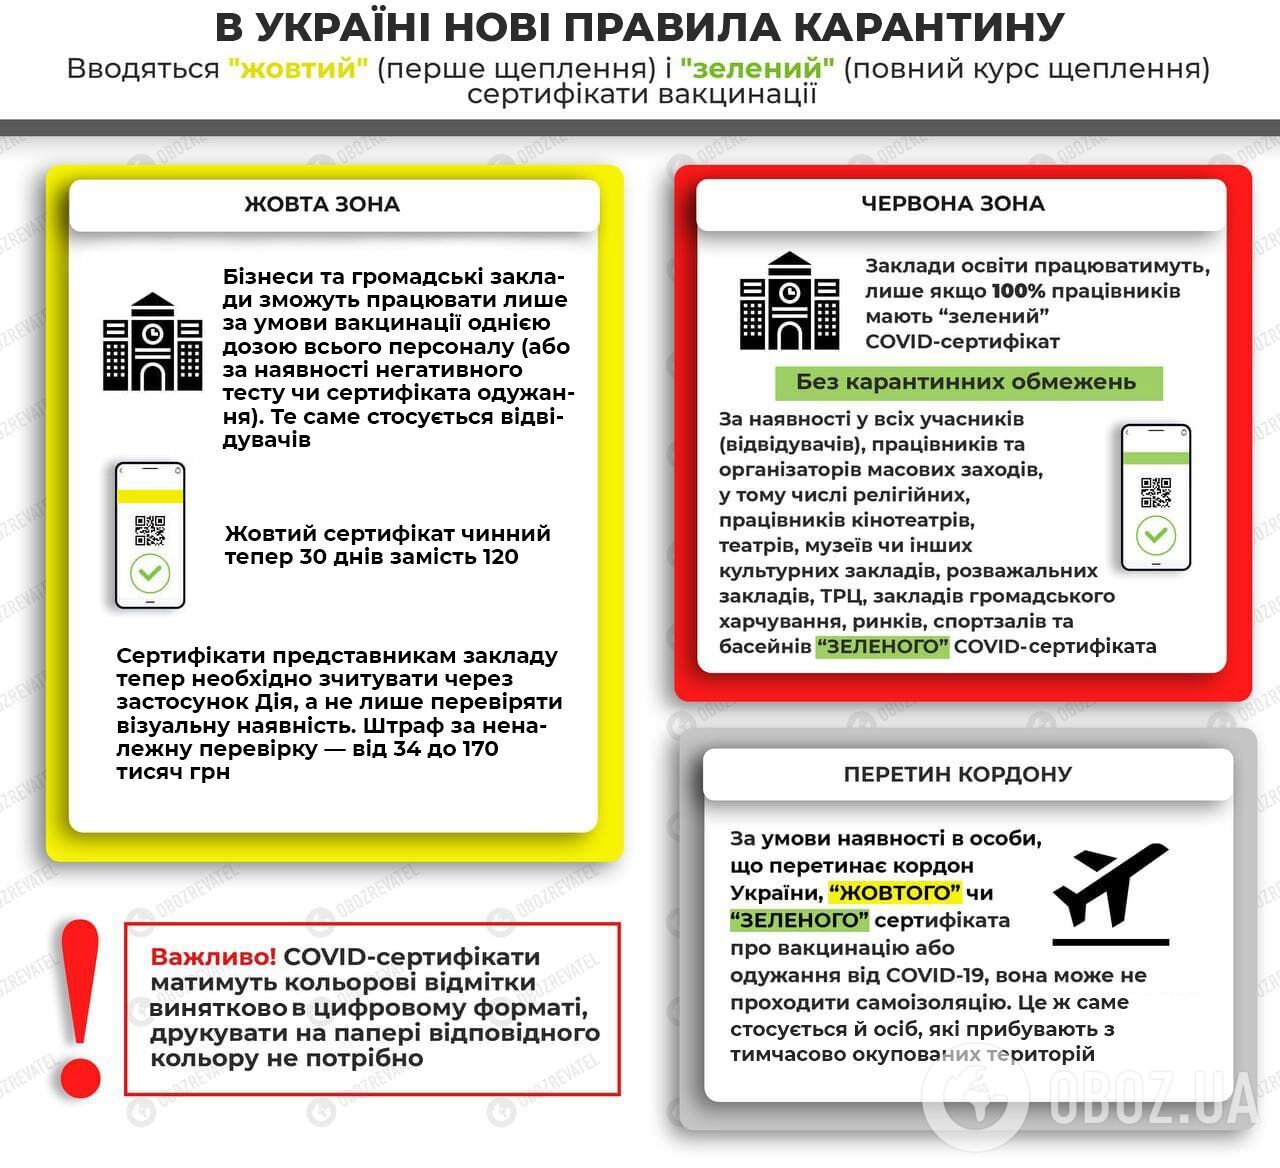 Правила карантина в эпидемиологических зонах Украины